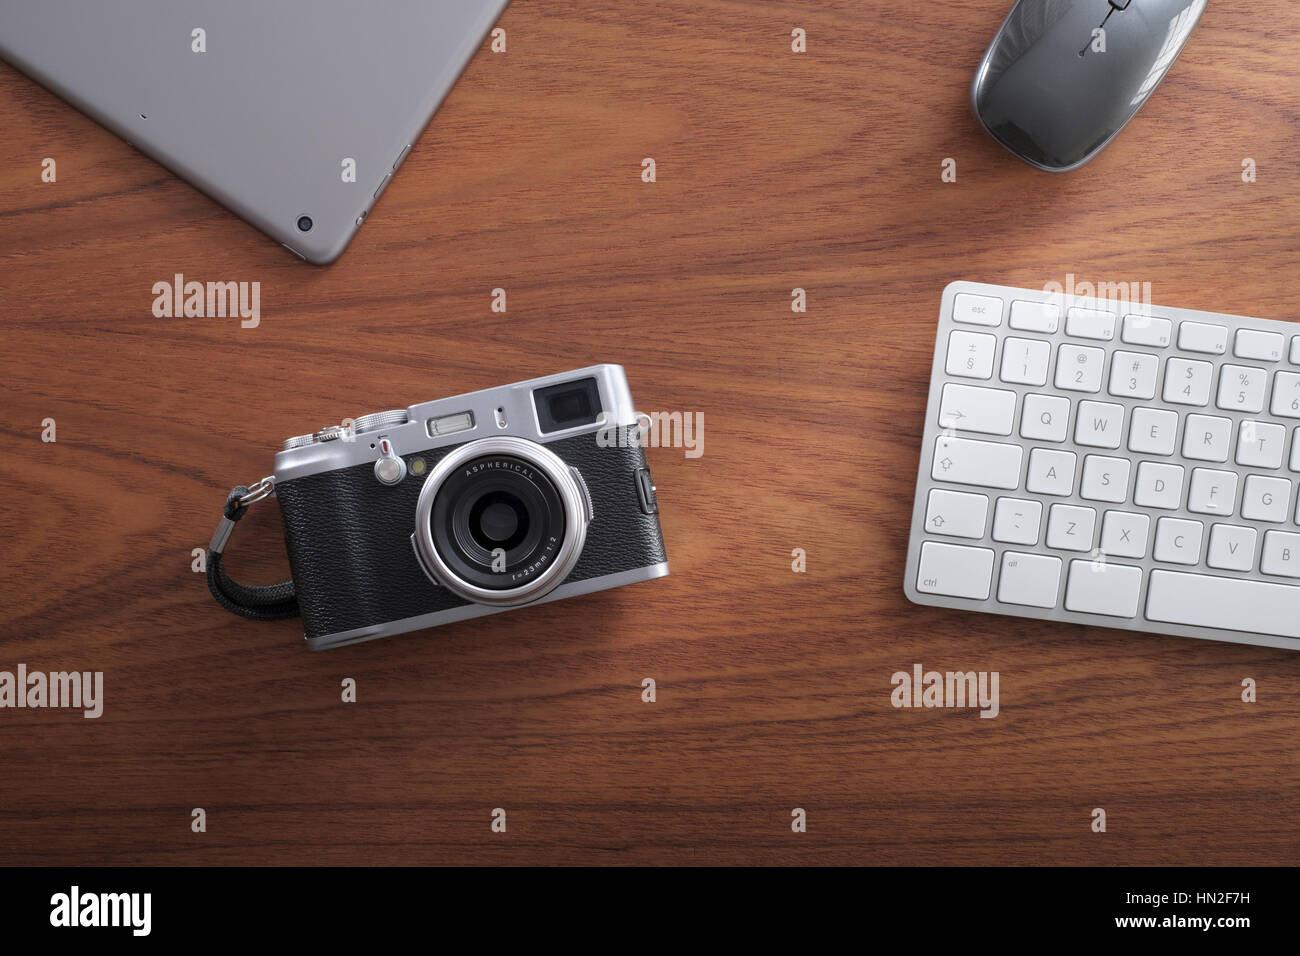 Scrivania da ufficio con fotocamera digitale, pad, Mouse e tastiera wireless. Foto Stock